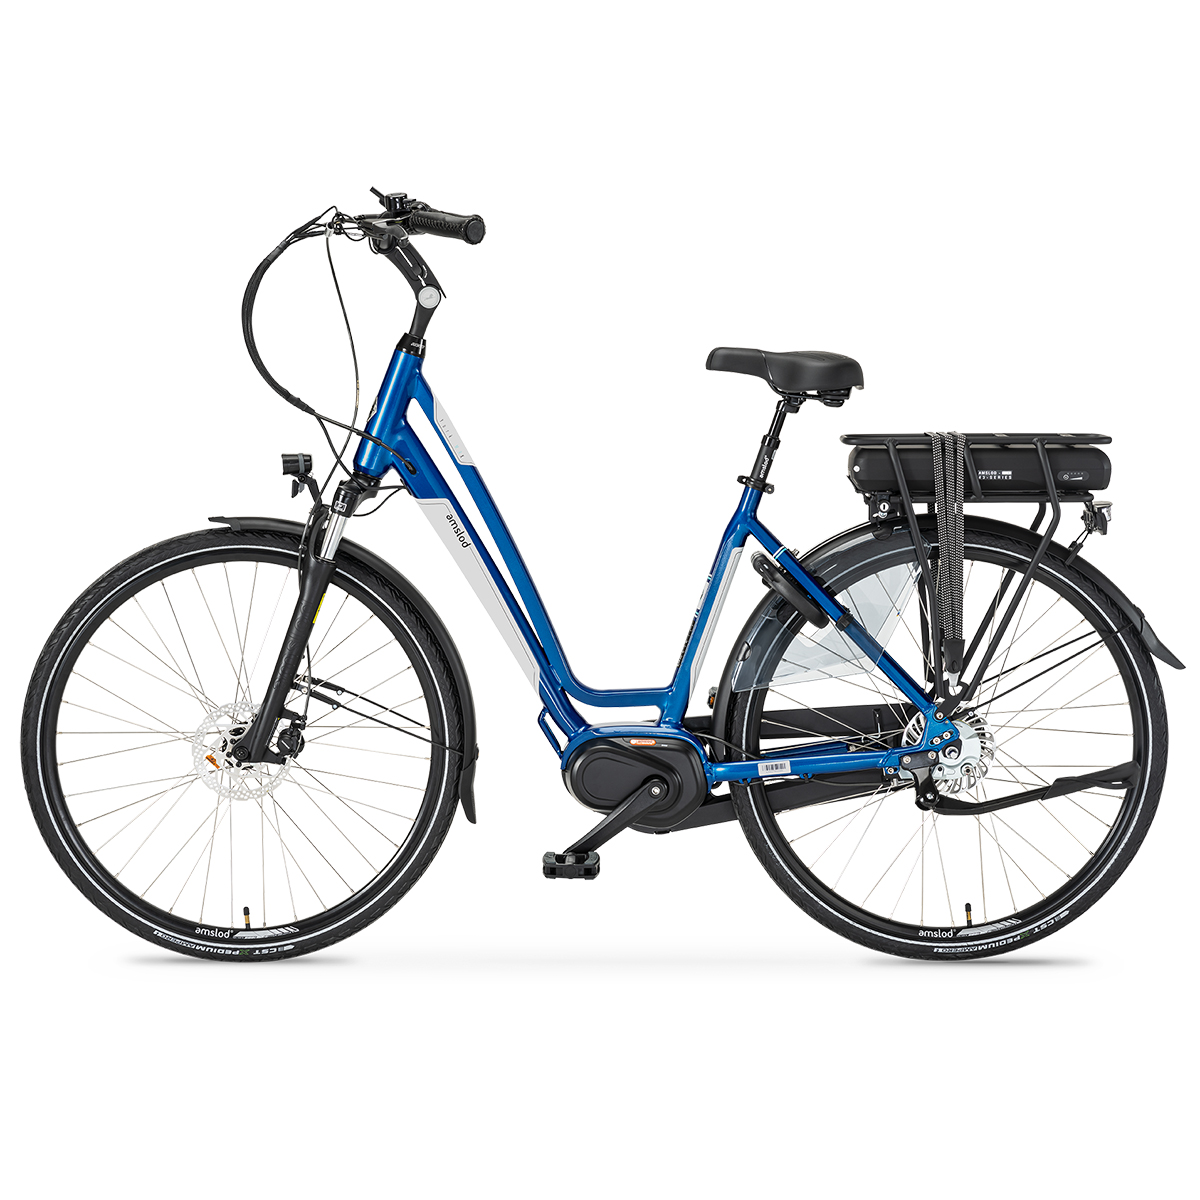 Afbeelding Amslod elektrische fiets york active classic electrische fiets kopen 4